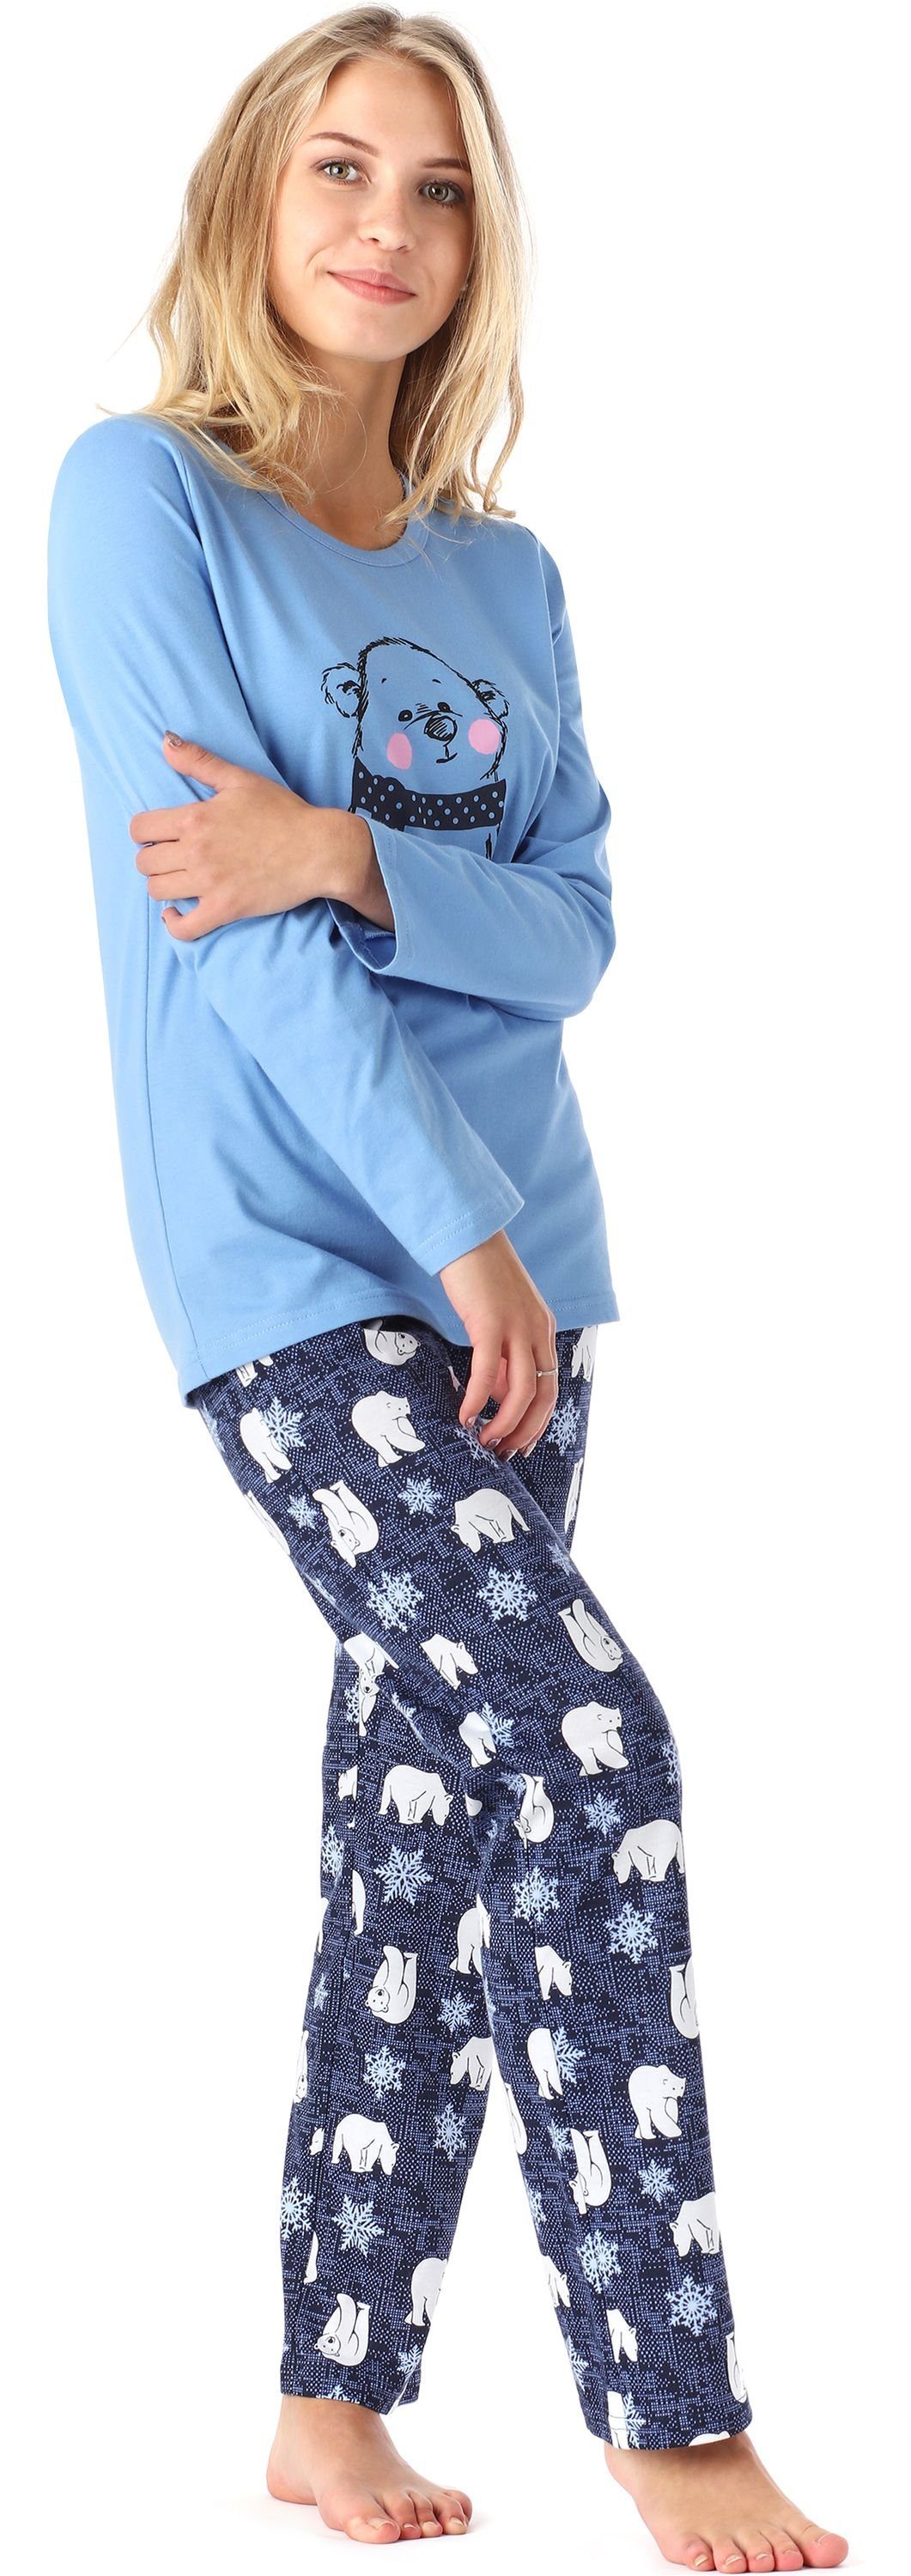 Merry Style Schlafanzug Bär Pyjama Damen MS10-192 Winter Blau Lang Zweiteilieger Schlafanzug